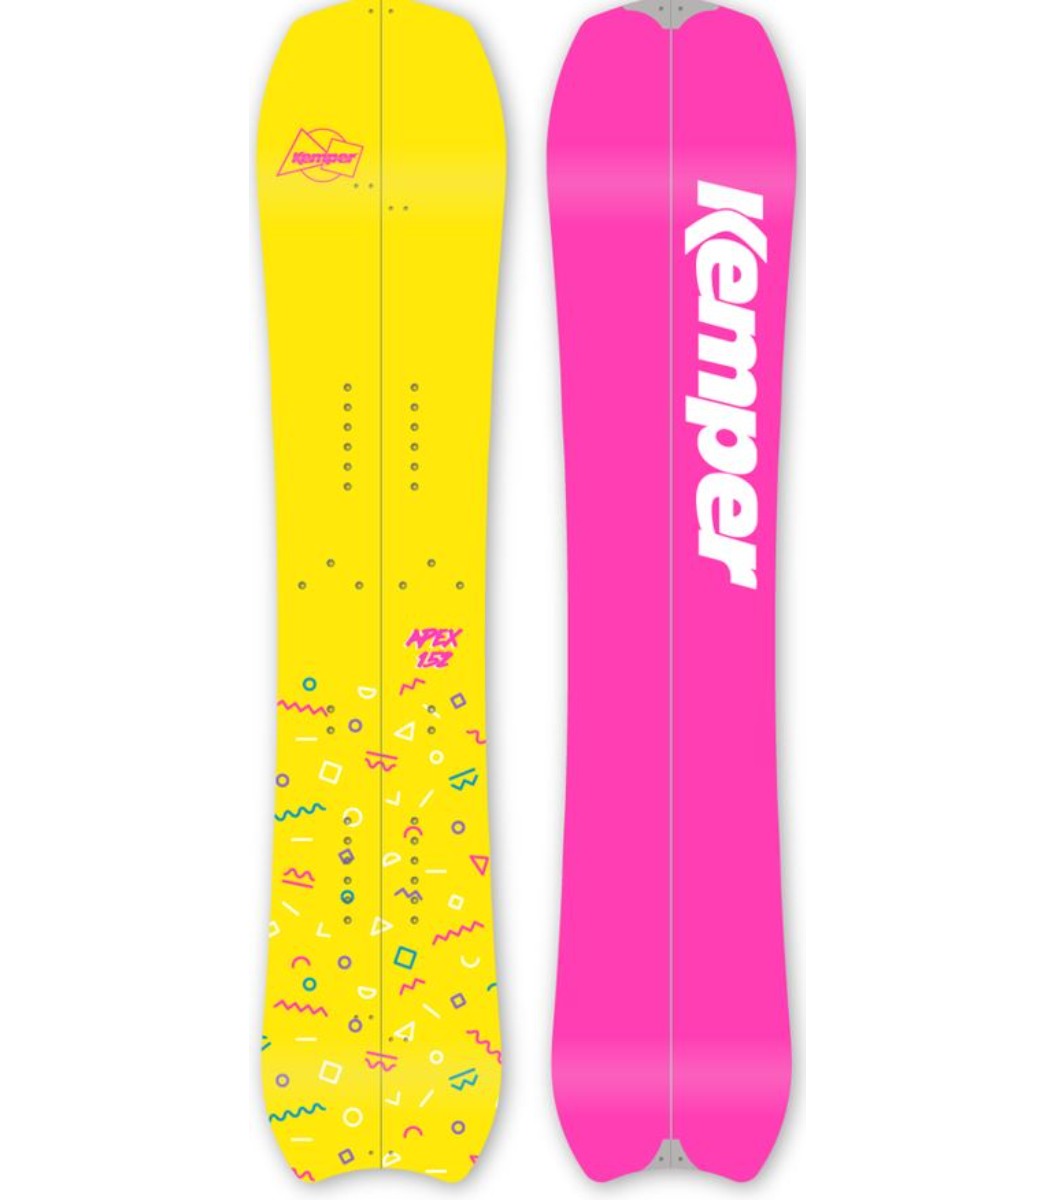 Kemper Apex Split Snowboard - 152 cm